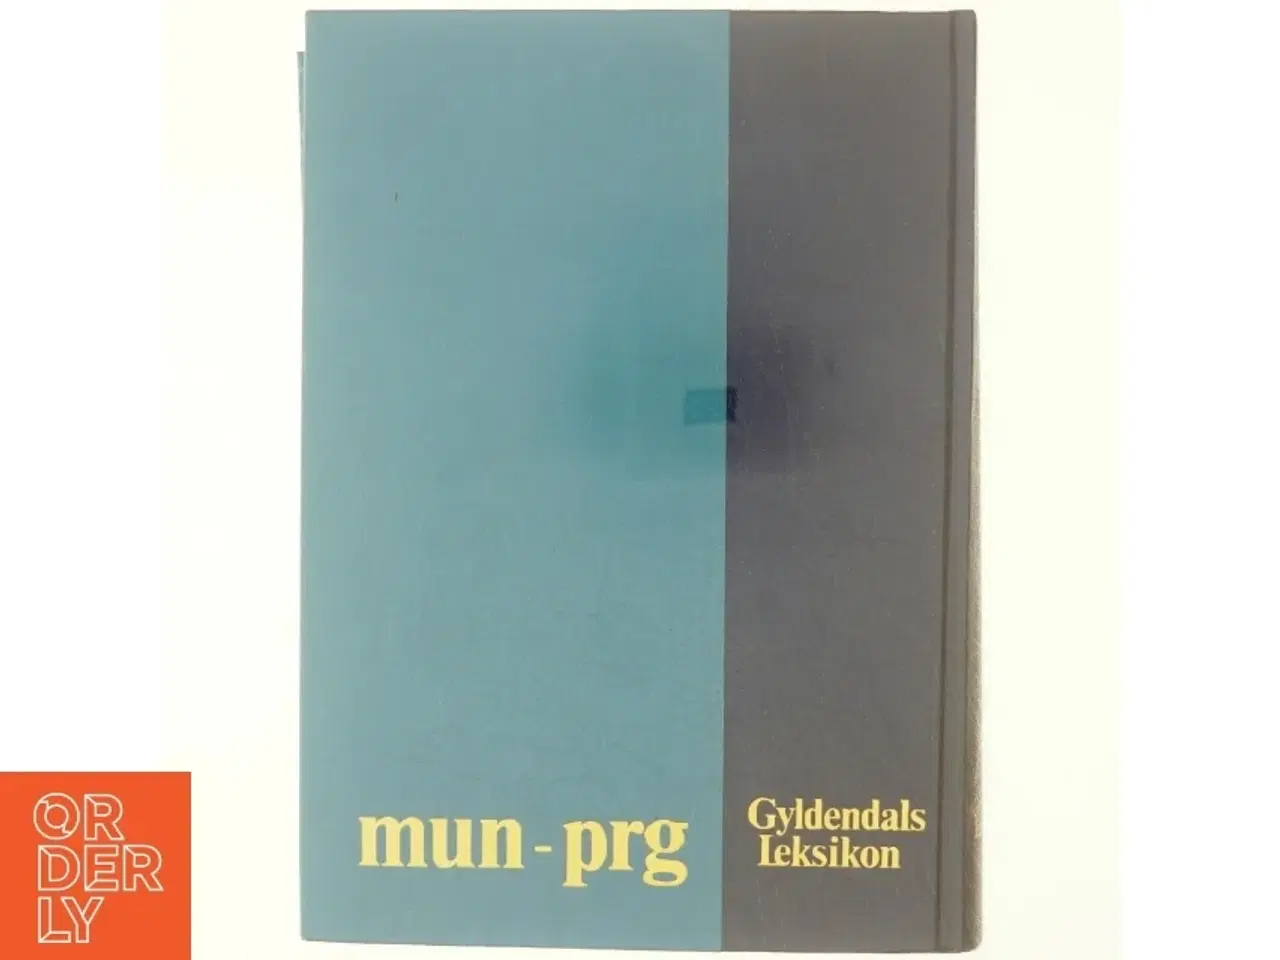 Billede 3 - Gyldendals leksikon mun-prg